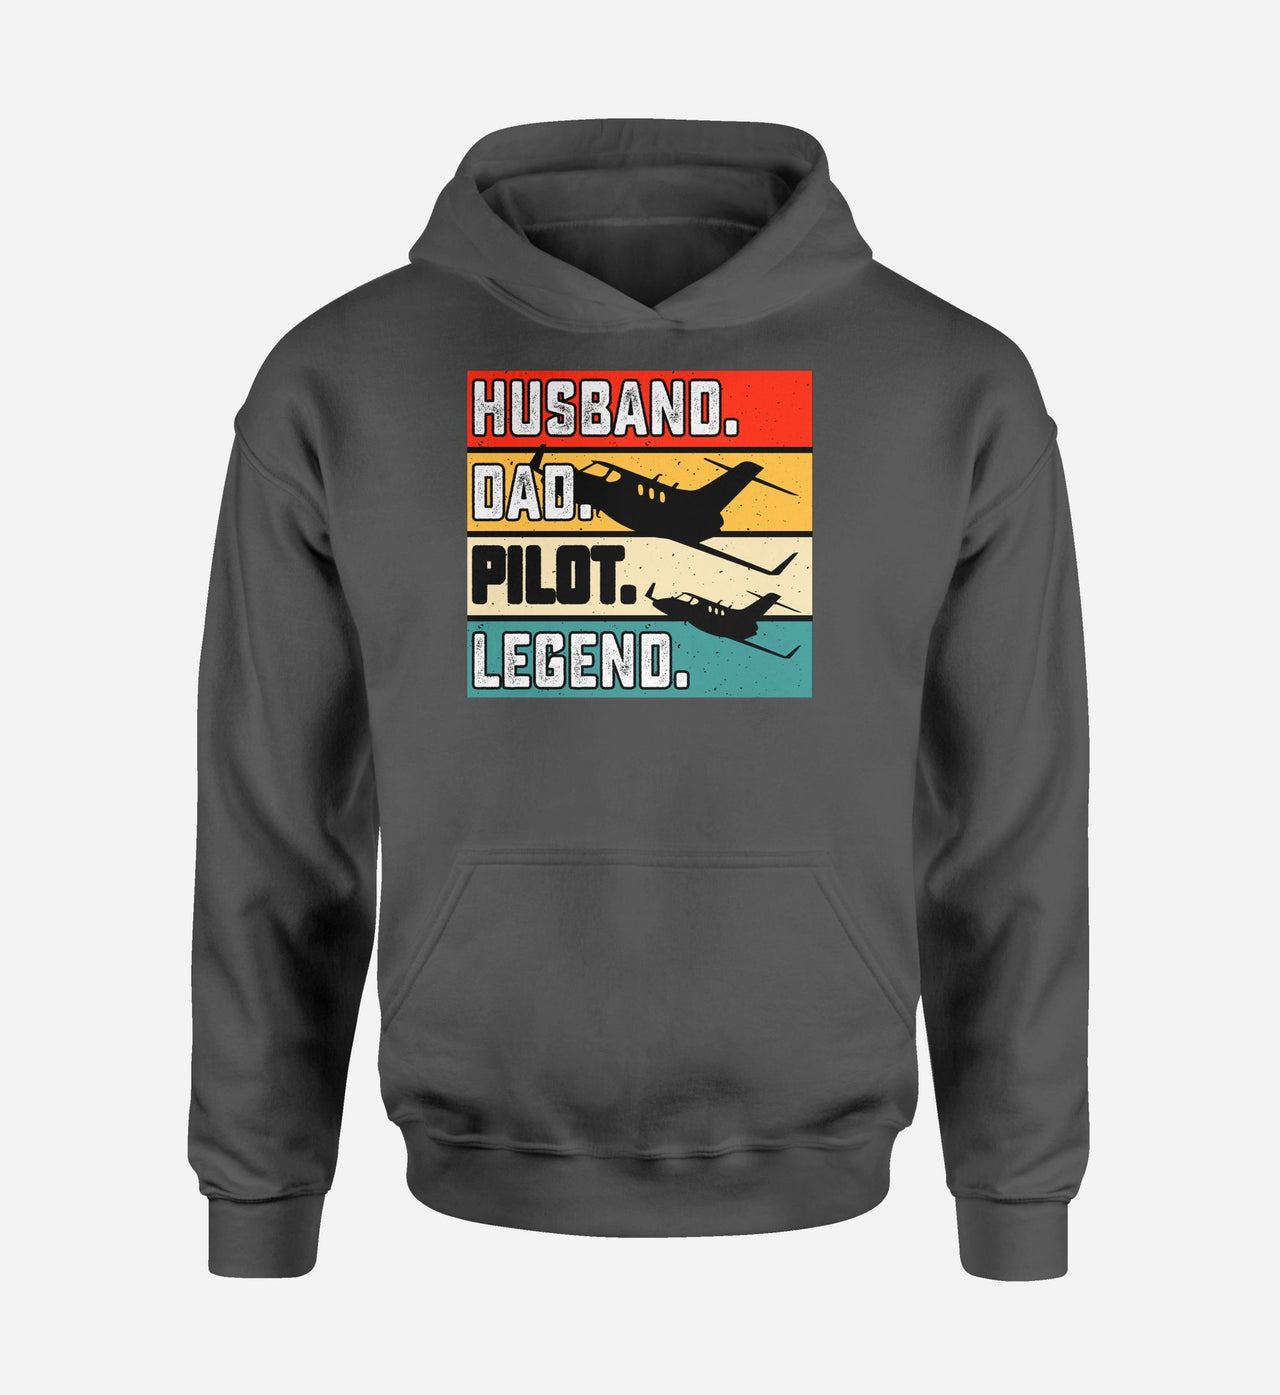 Husband & Dad & Pilot & Legend Designed Hoodies